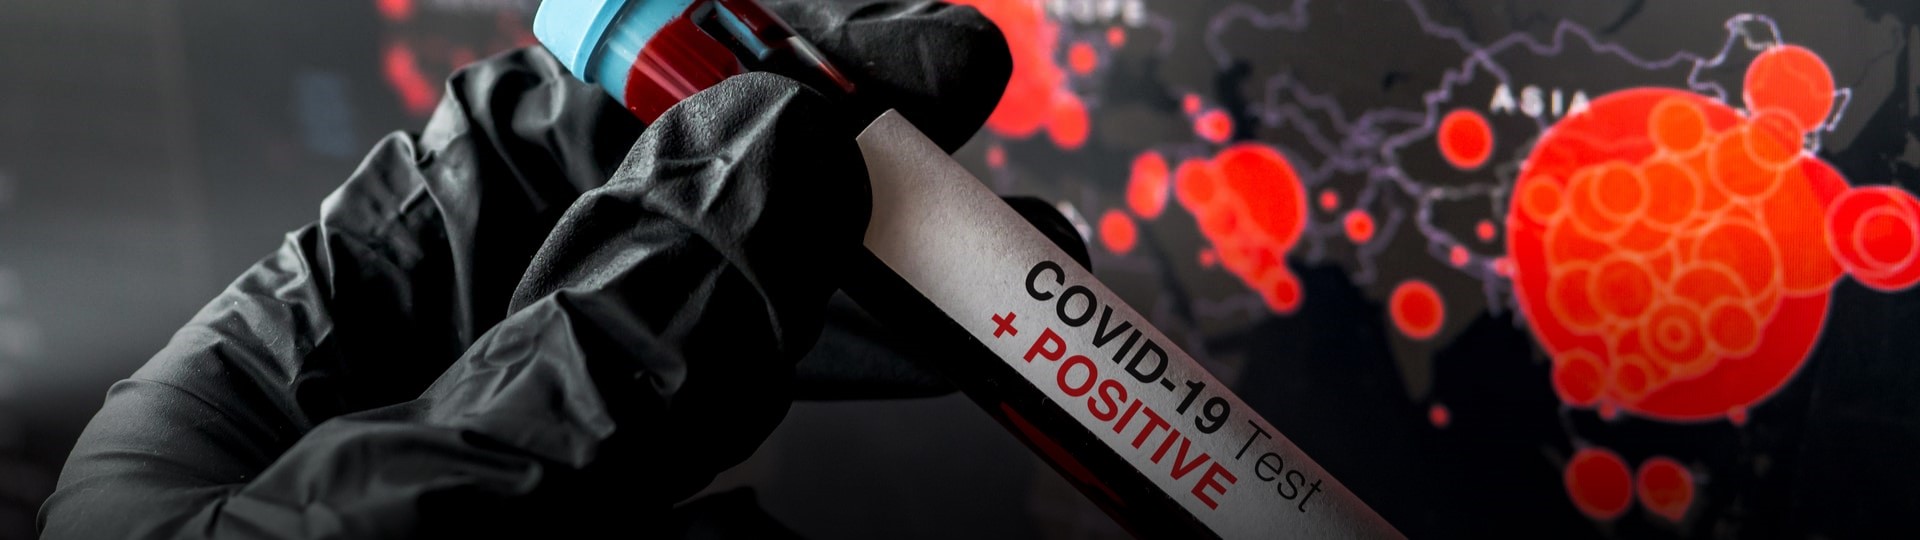 Šíření koronaviru prudce narůstá